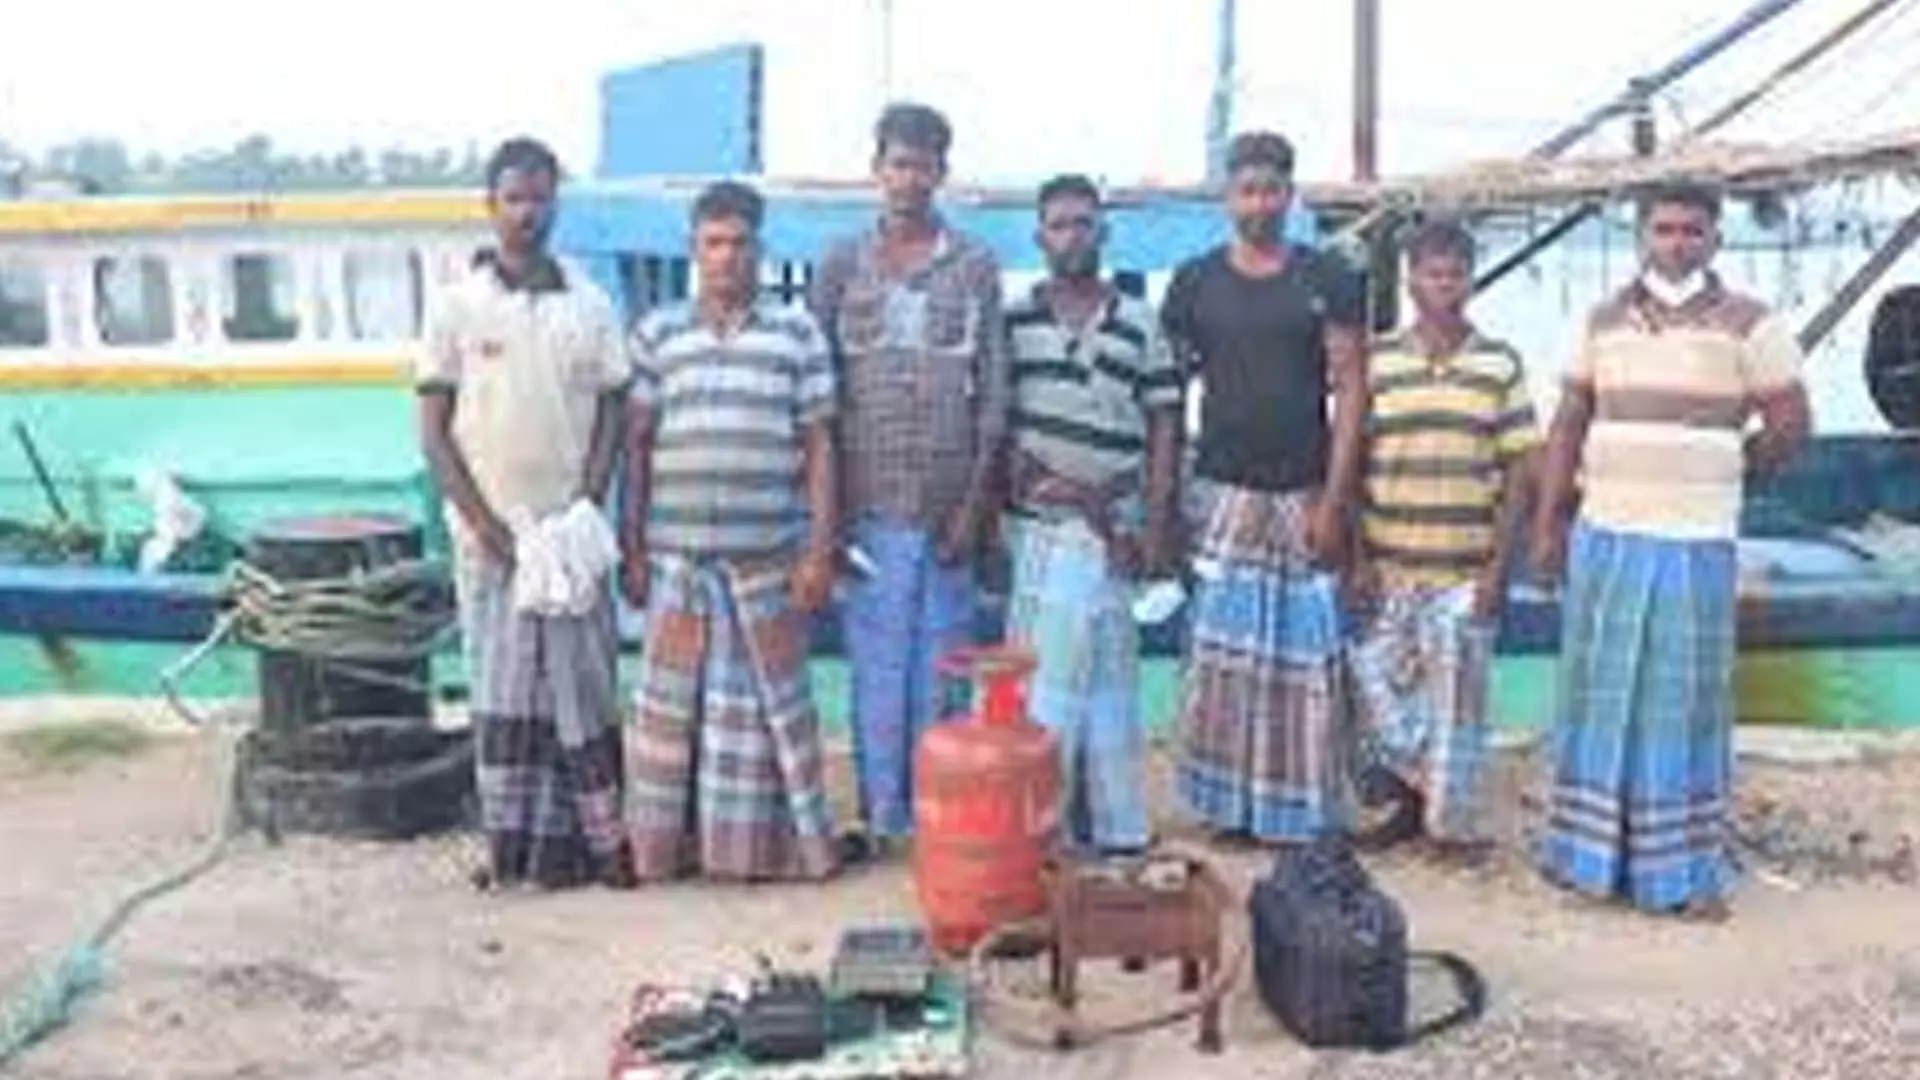 Tamil Nadu News: श्रीलंकाई नौसेना ने तमिलनाडु के 10 और मछुआरों को गिरफ्तार किया